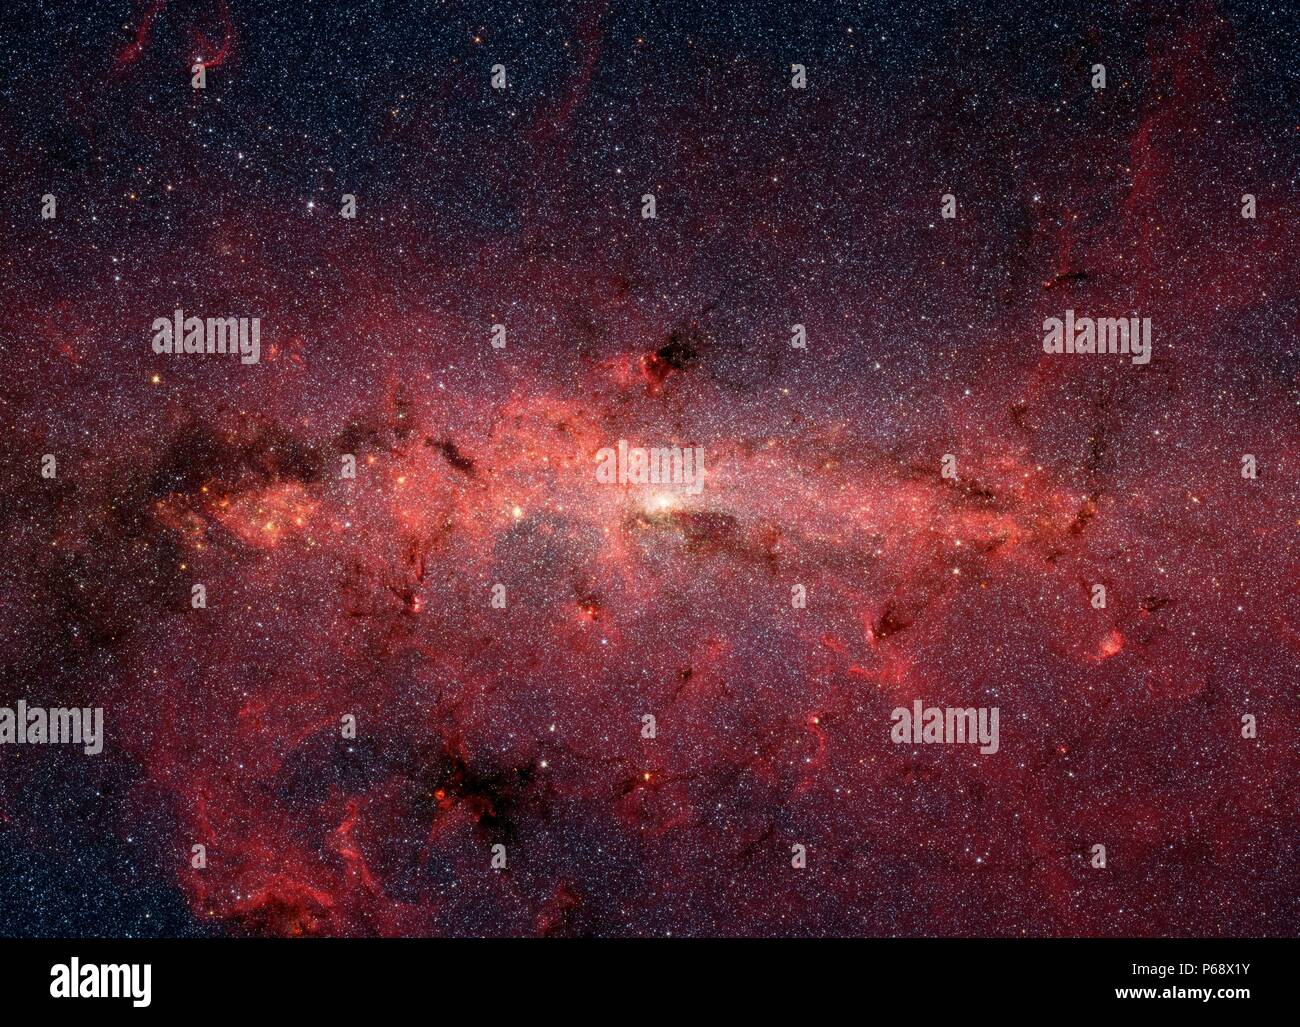 Photographie de la Voie lactée prise par au télescope spatial Spitzer de la NASA. Datée 2007 Banque D'Images